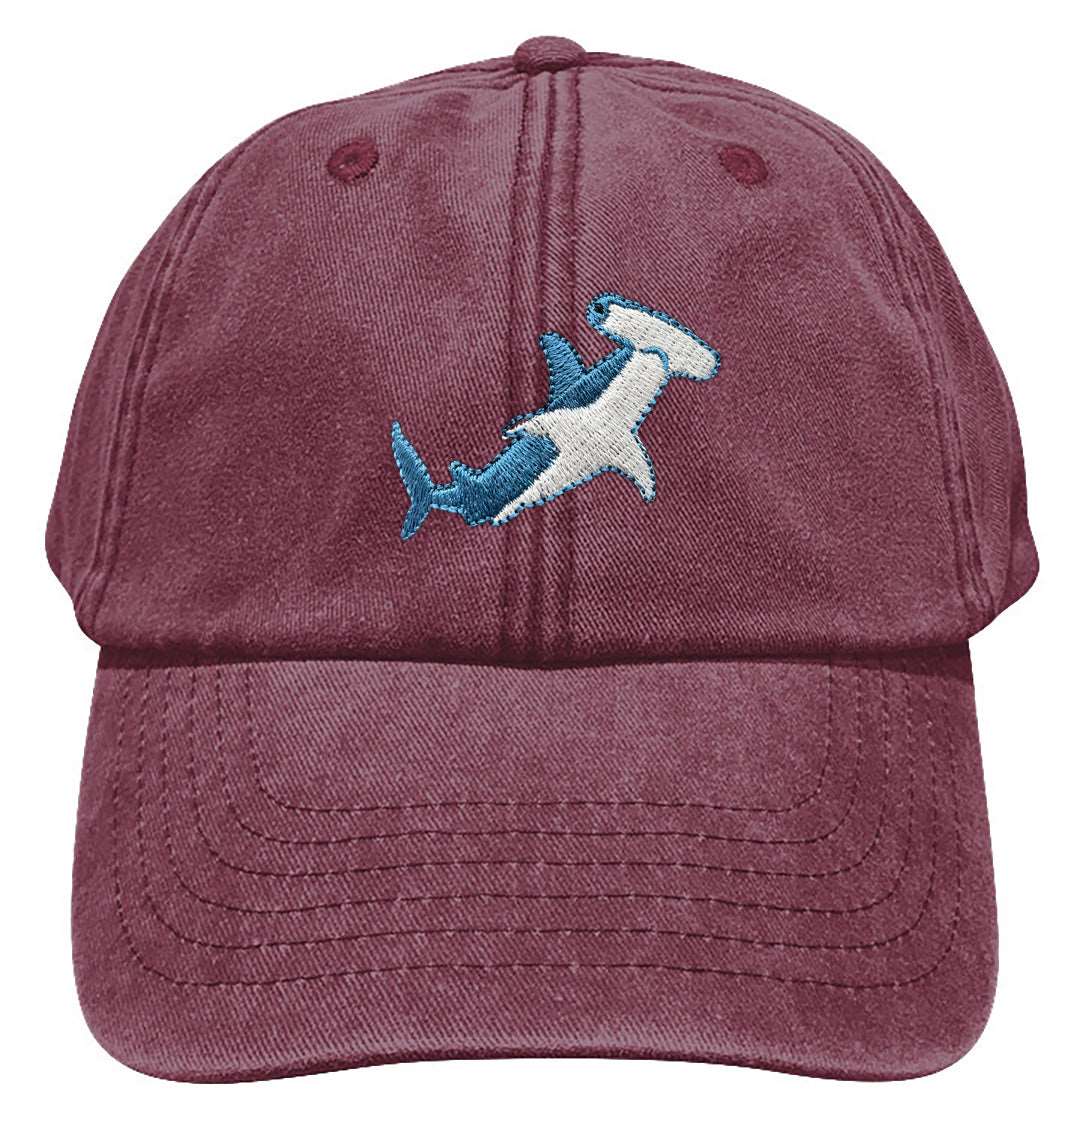 Hammerhead Shark Denim Cap